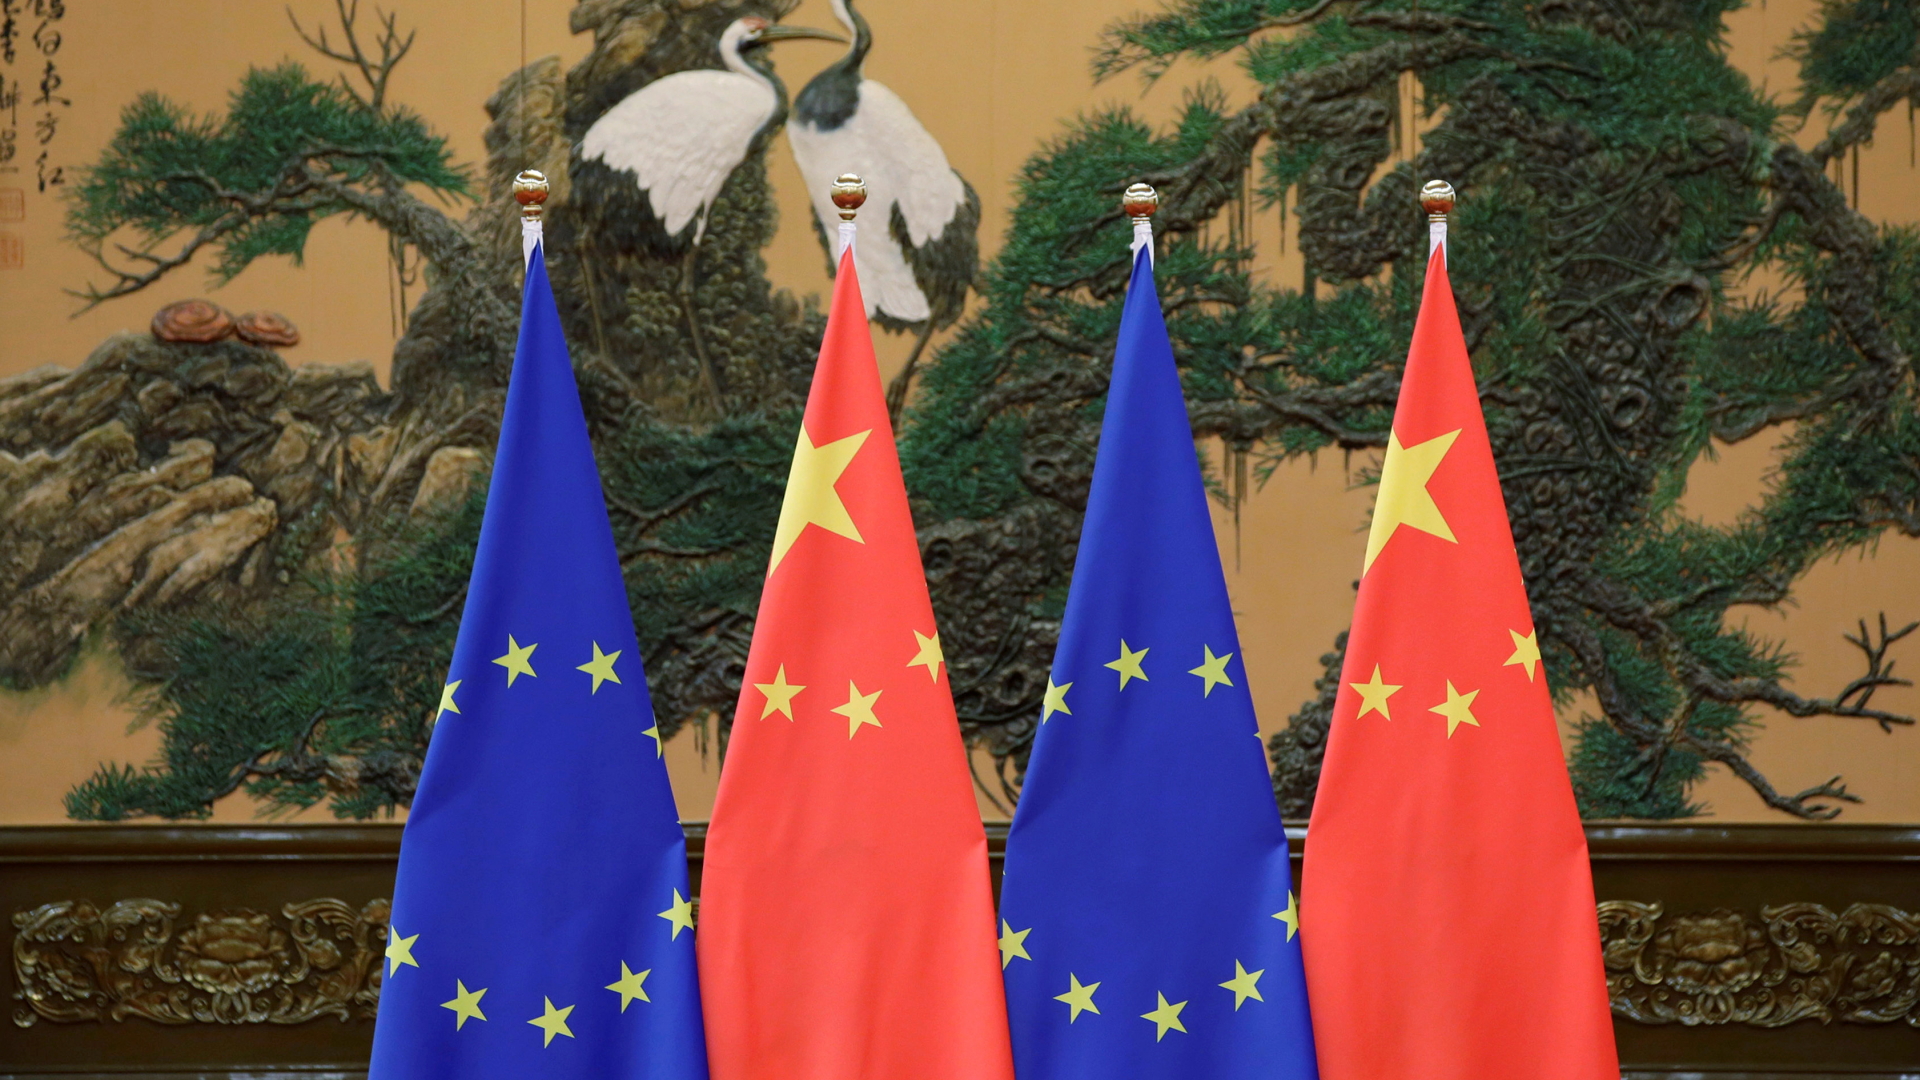 Flaggen von EU und China